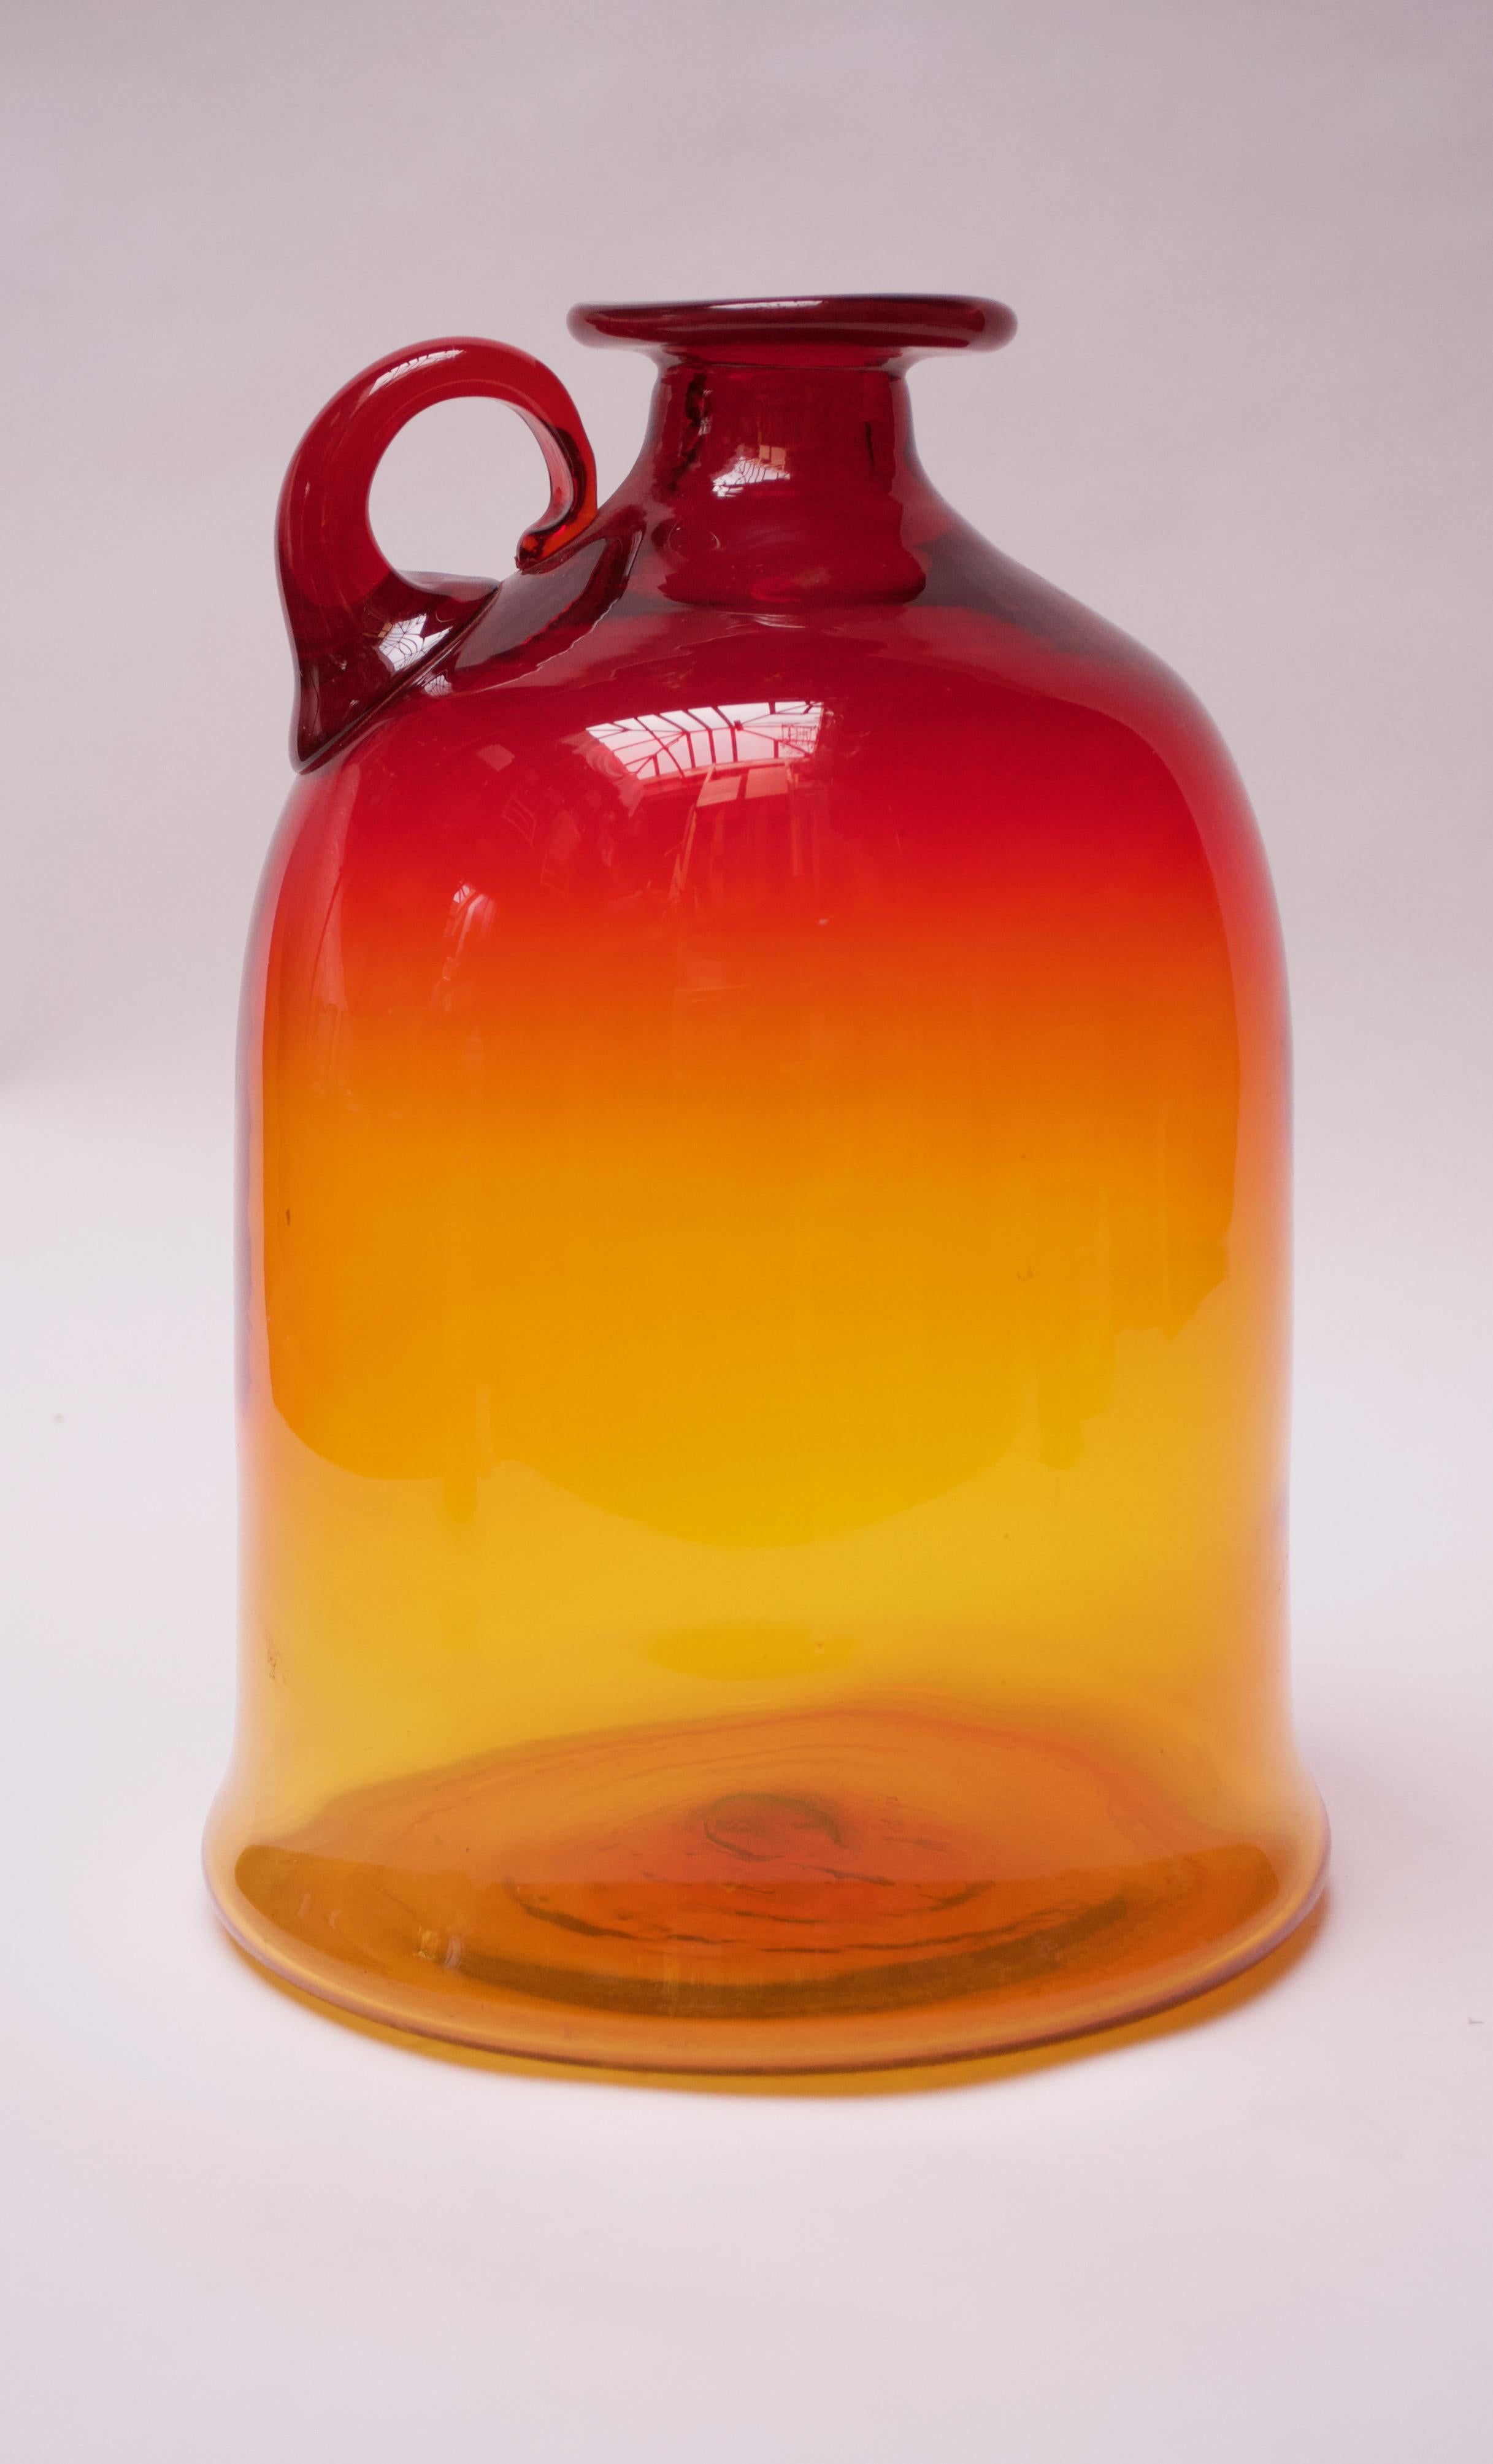 Pichet en verre soufflé conçu par John Nickerson et fabriqué par Blenko. Ce modèle est apparu pour la première fois dans le catalogue Blenko de 1972 sous le numéro de modèle 7226S. Grande taille et palette attrayante amberina / tangerine avec la